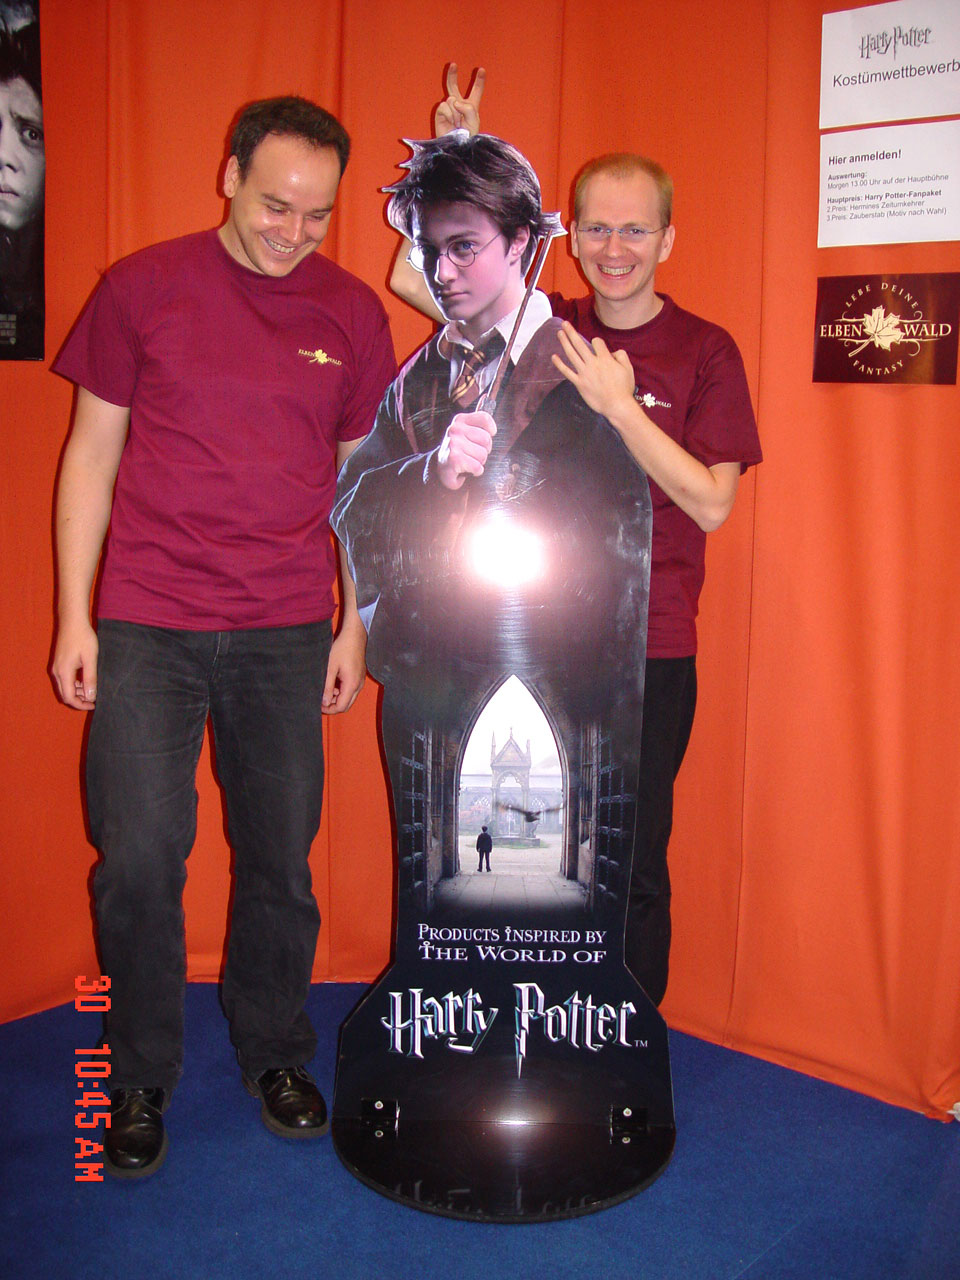 Jens und Dirk vor Harry Potter Pappfigur, 2004